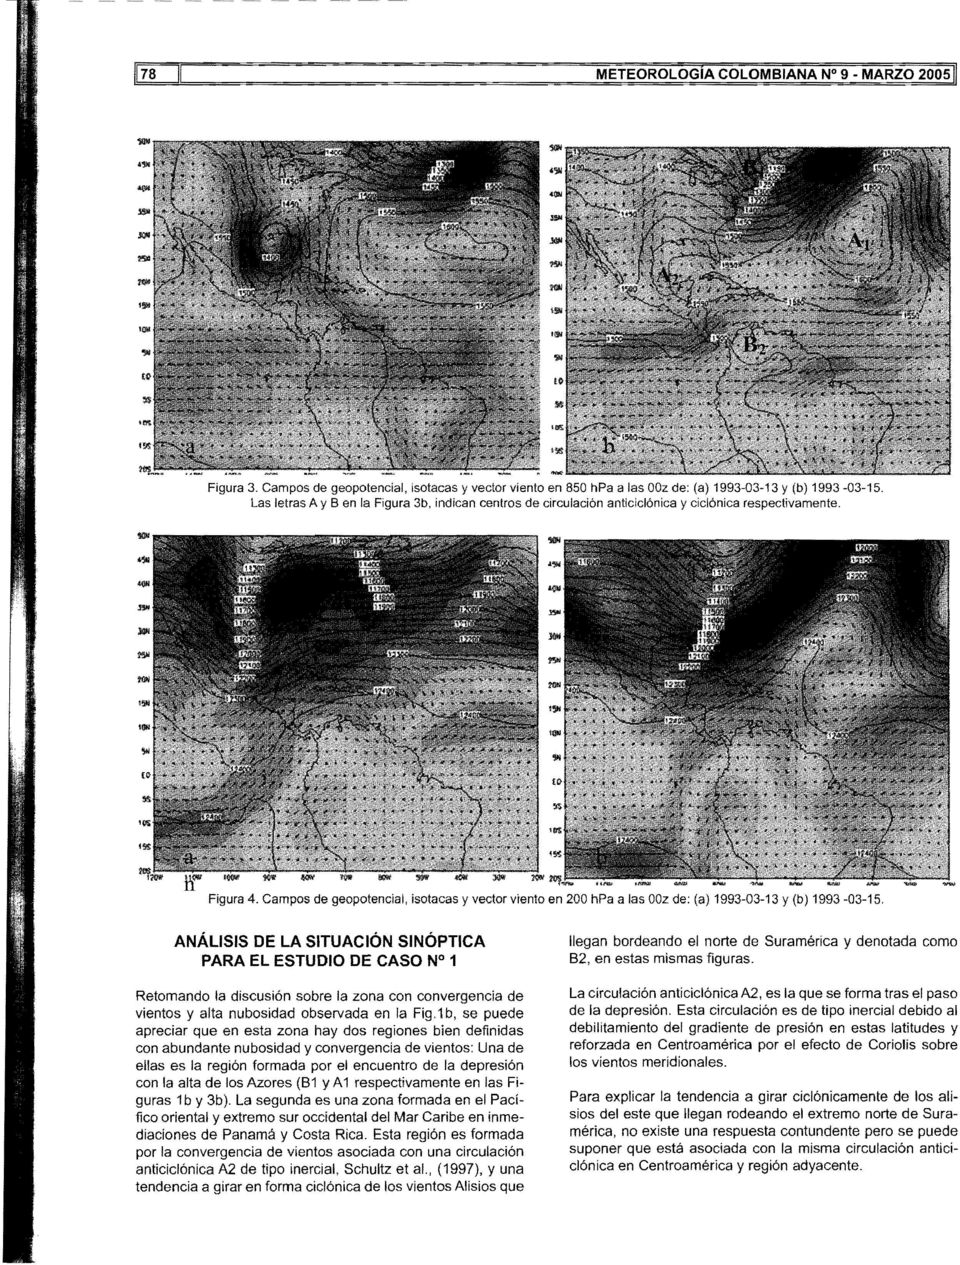 Campos de geopotencial, isotacas y vector viento en 200 hpa a las OOz de: (a) 1993-03-13 y (b) 1993-03-15.